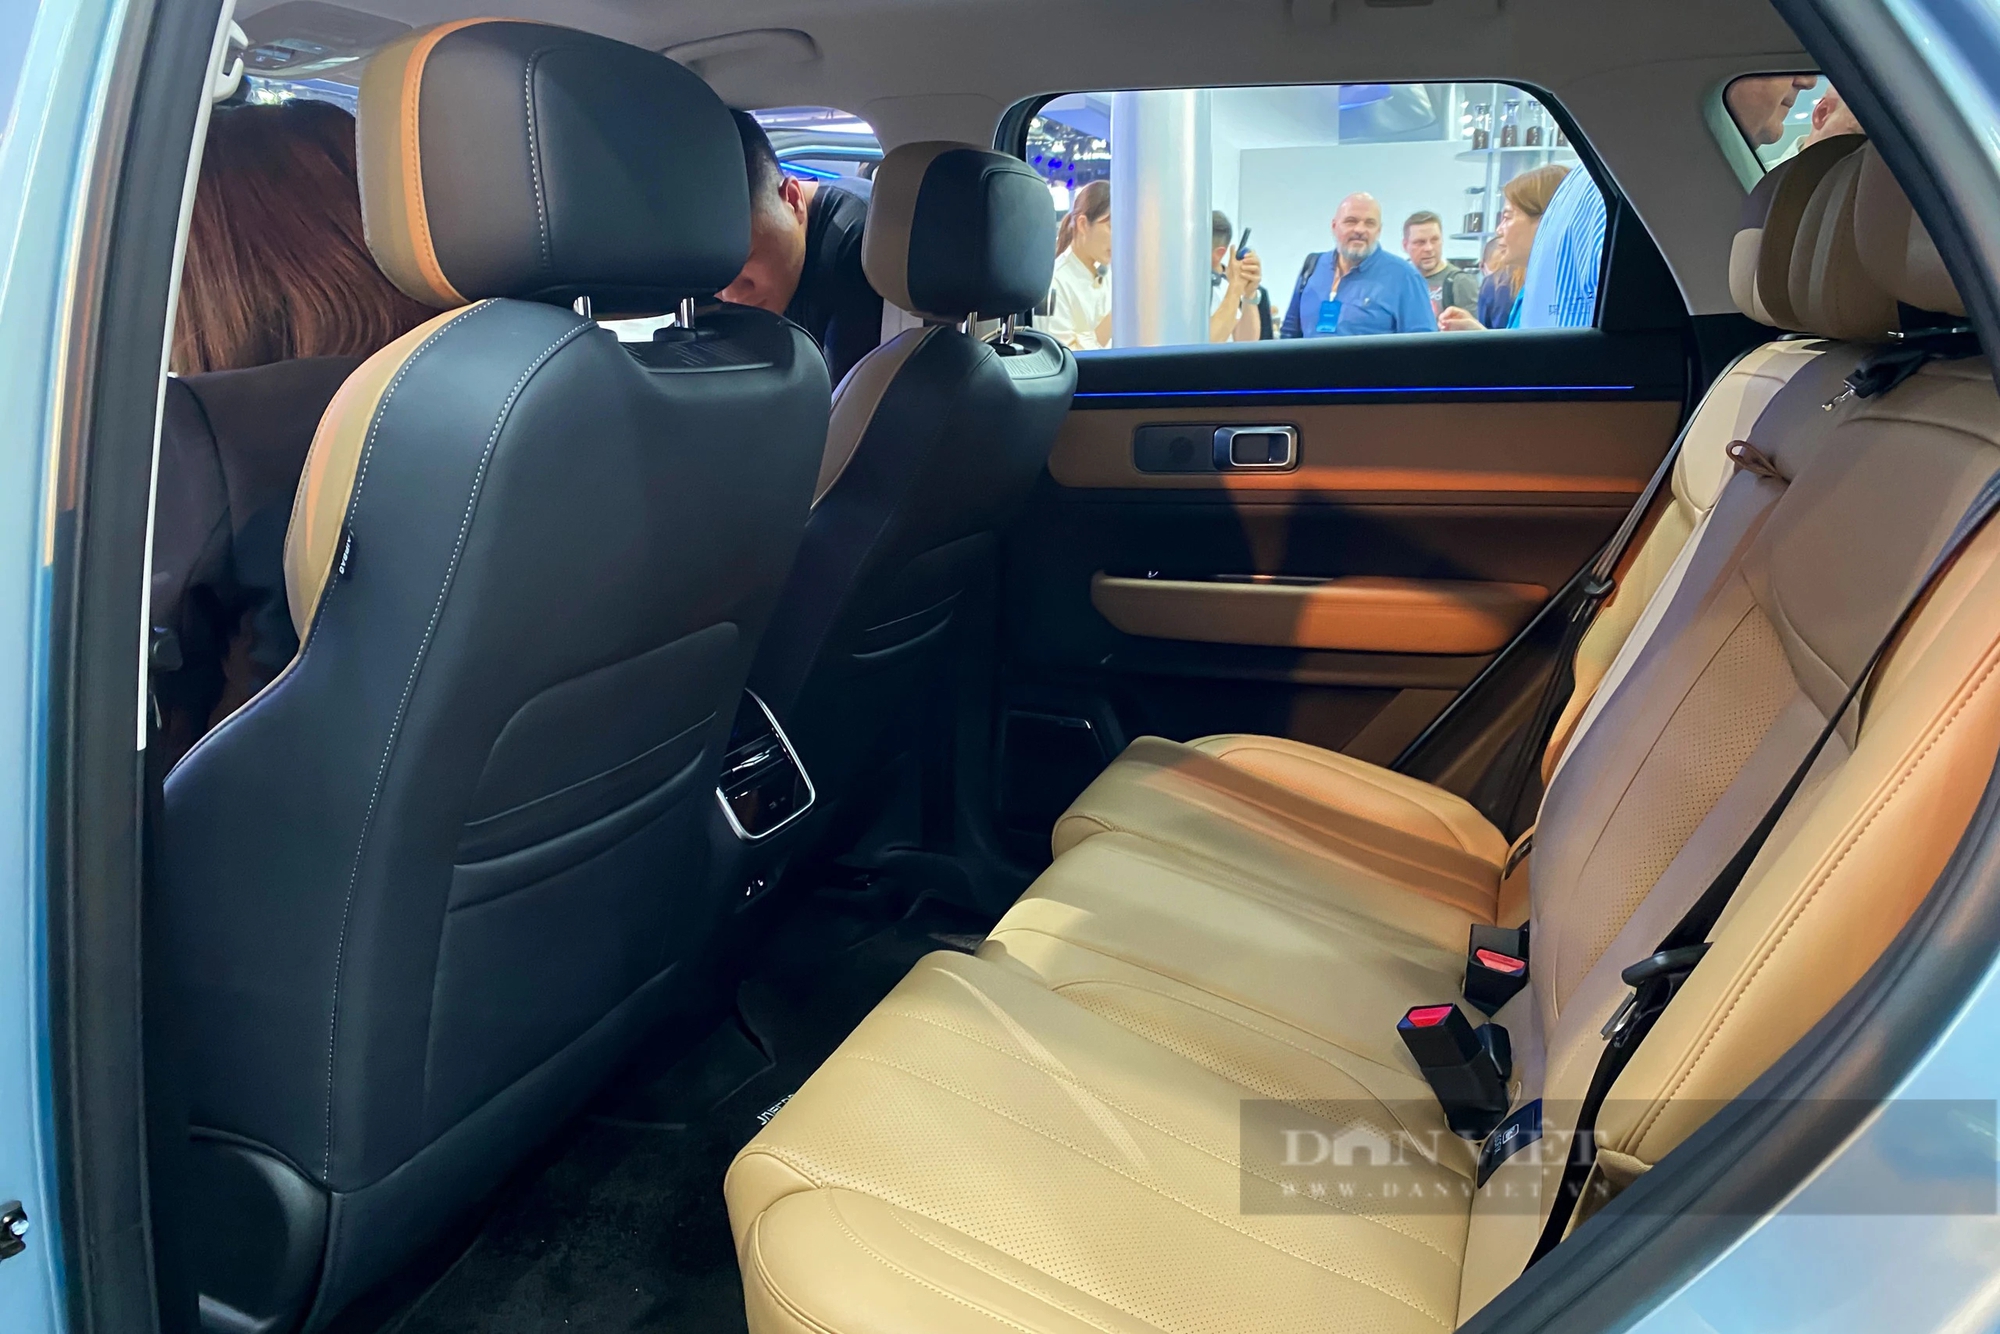 Chery giới thiệu dàn xe tại Triển lãm ô tô Bắc Kinh, có xe về Việt Nam năm nay đáng chờ đợi- Ảnh 3.